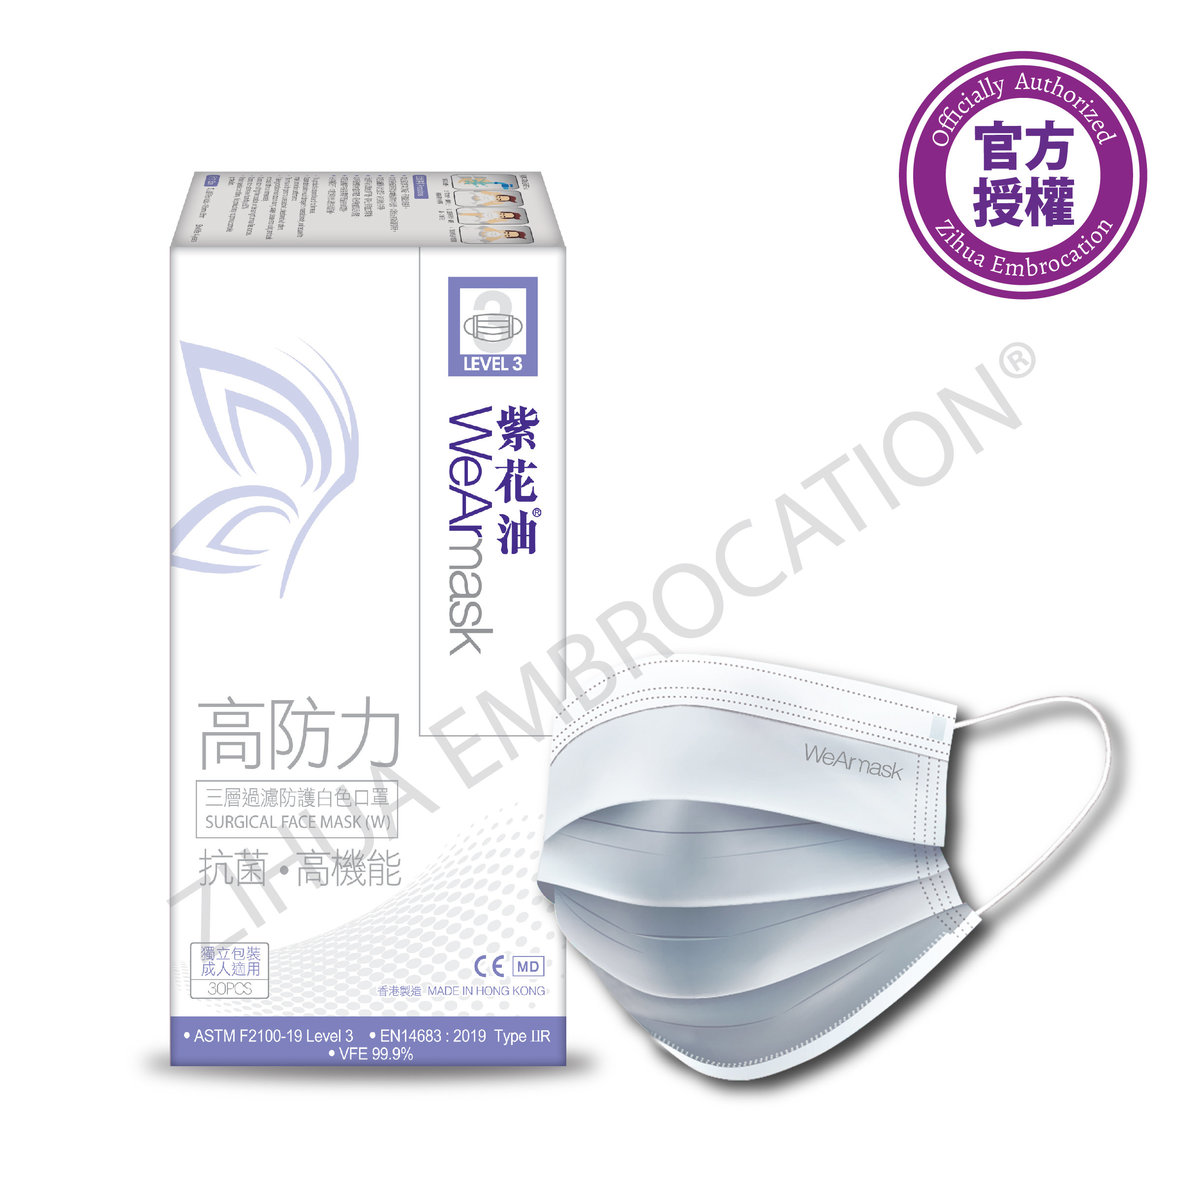 紫花油 Wearmask三層過濾防護白色口罩level 3 成人 30片獨立包裝 Hktvmall 香港最大網購平台